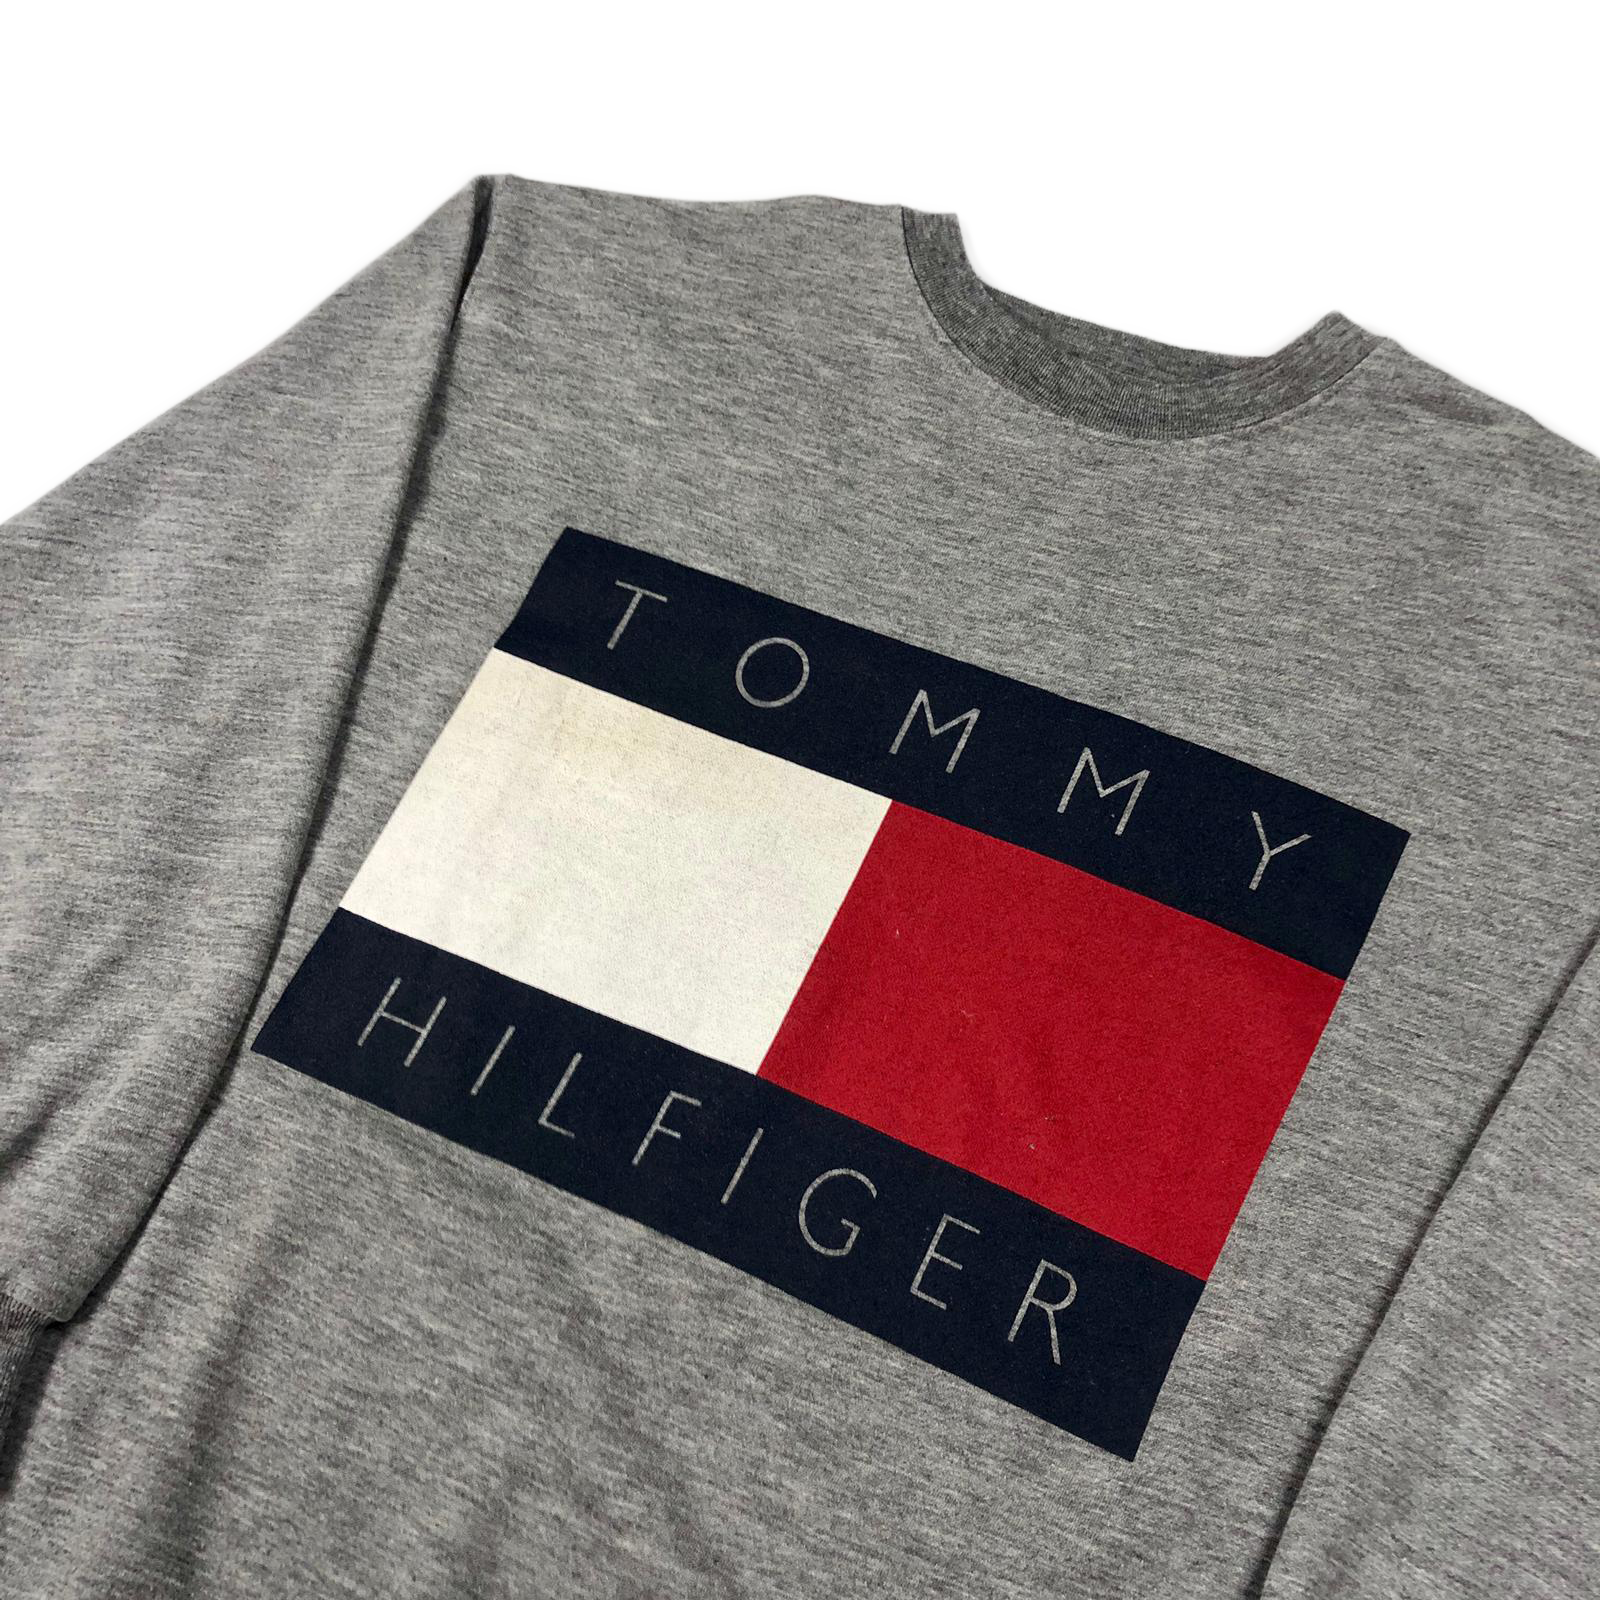 Tommy Hilfiger flag sweatshirt